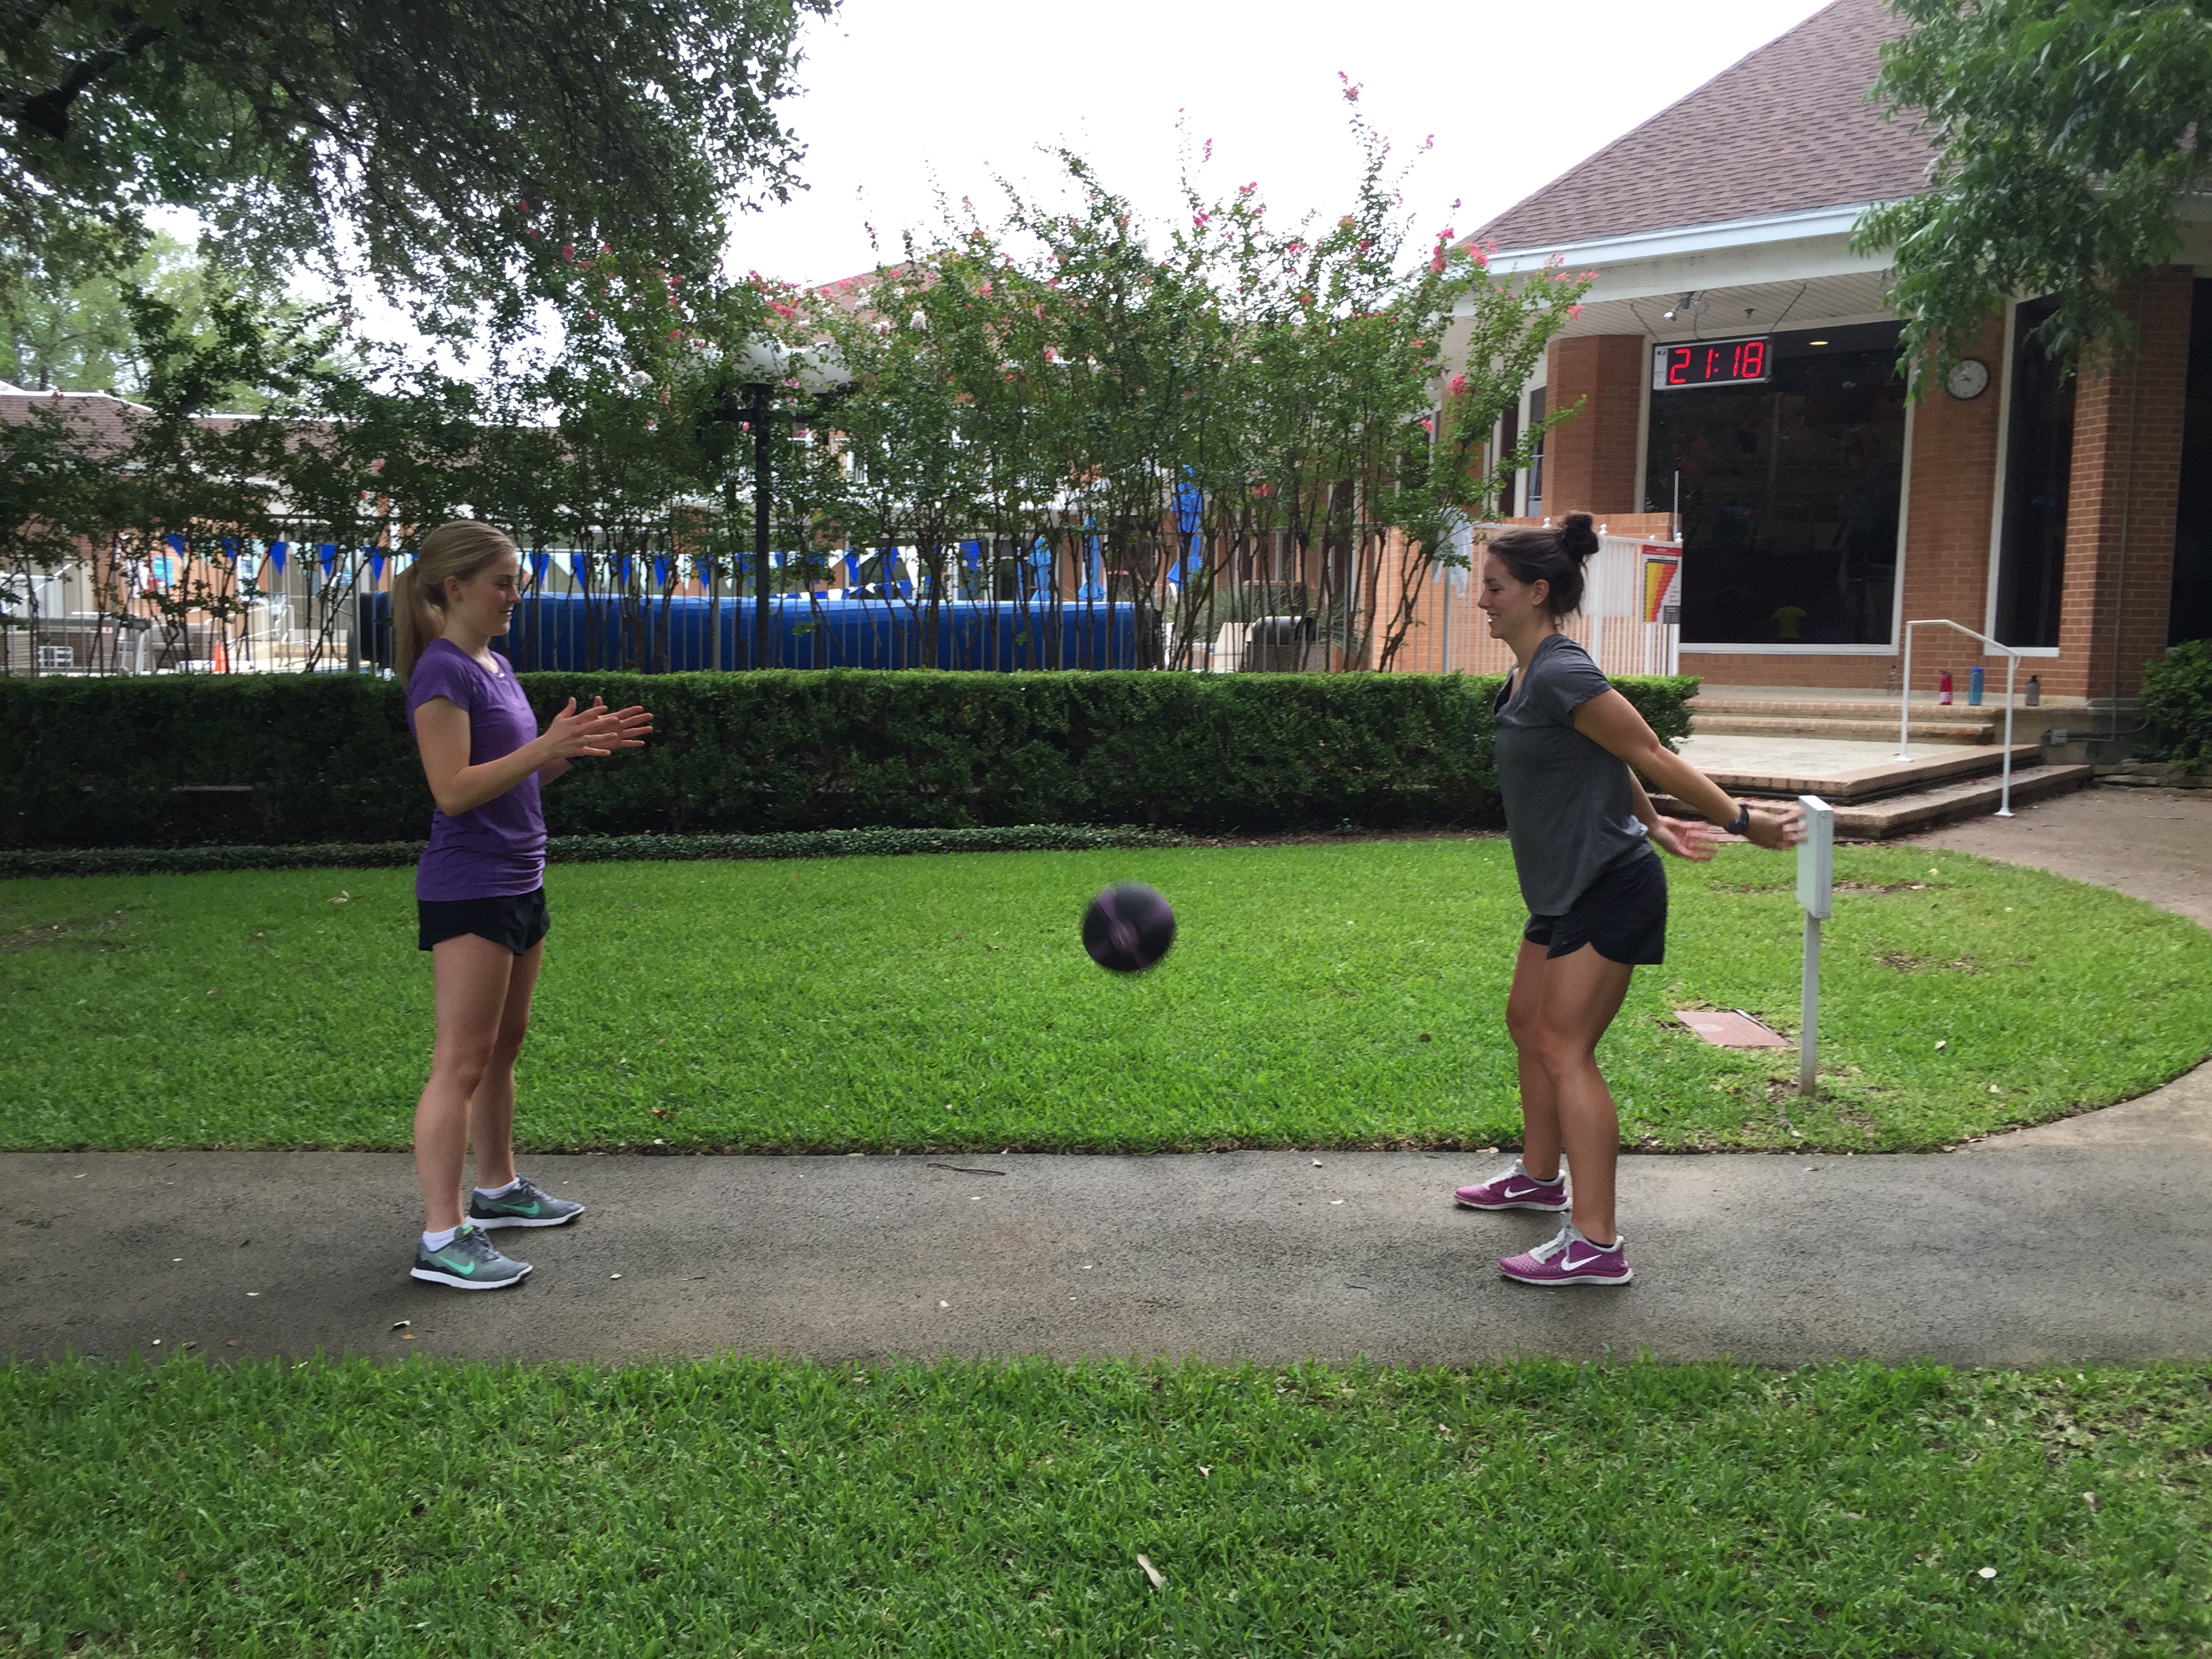 Two women doing the medicine ball slam exercise